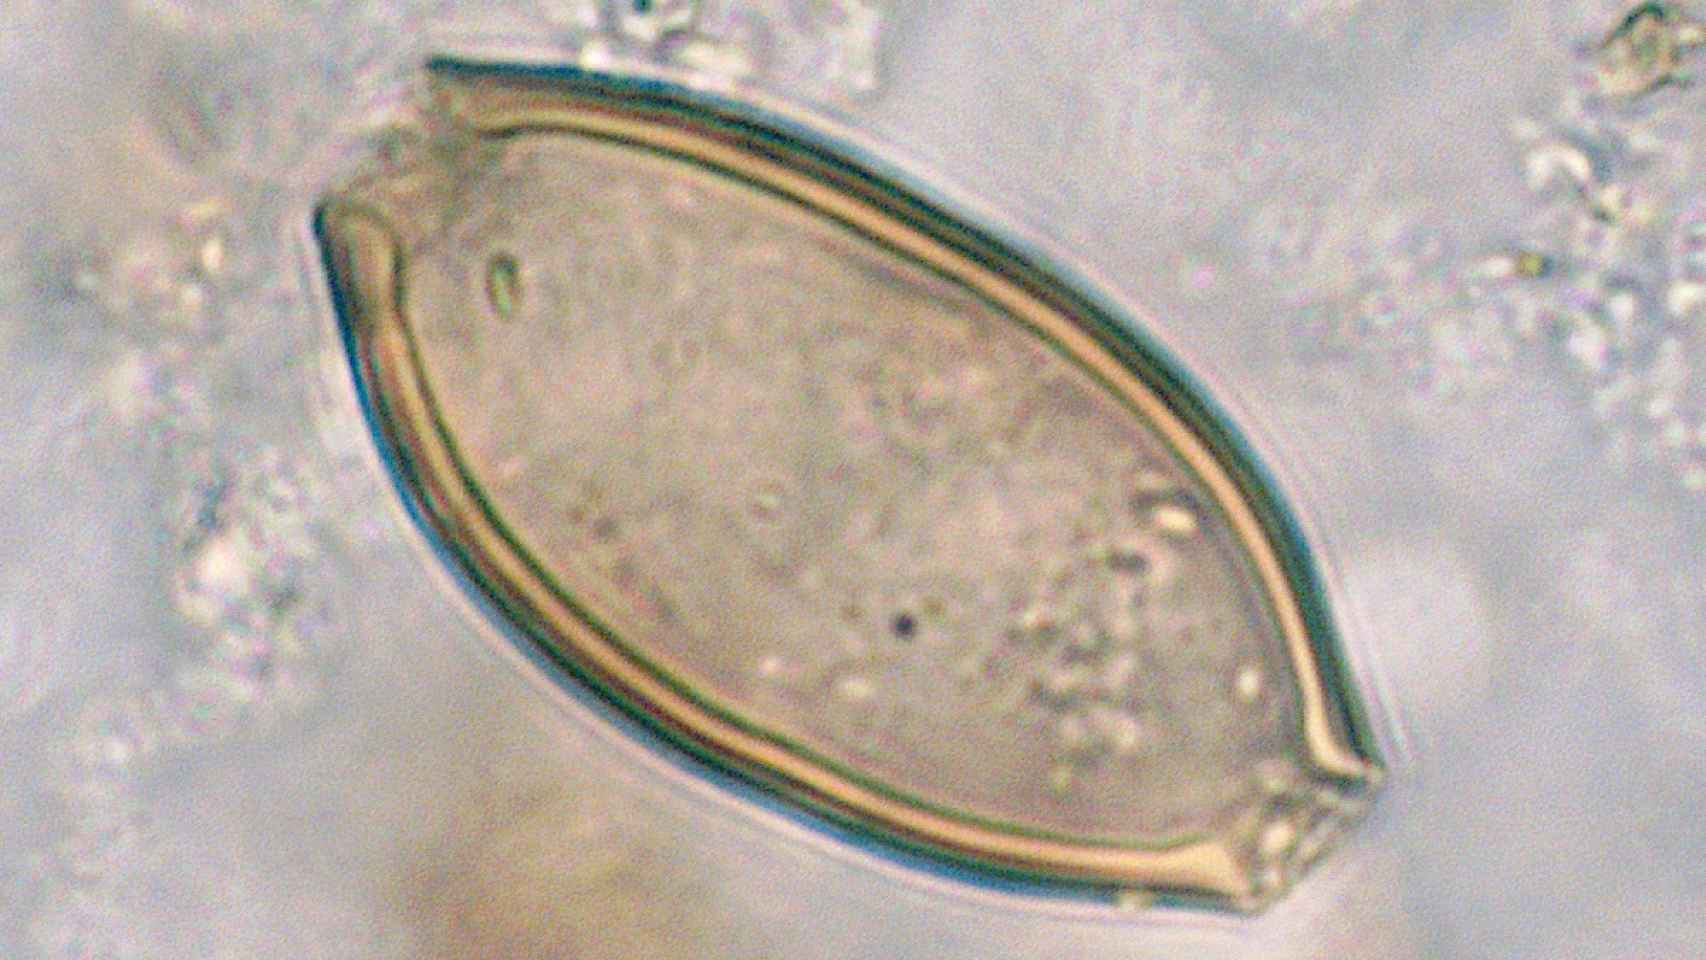 Imagen a vista de microscopio de un huevo del parásito documentado en el interior del recipiente cerámico.